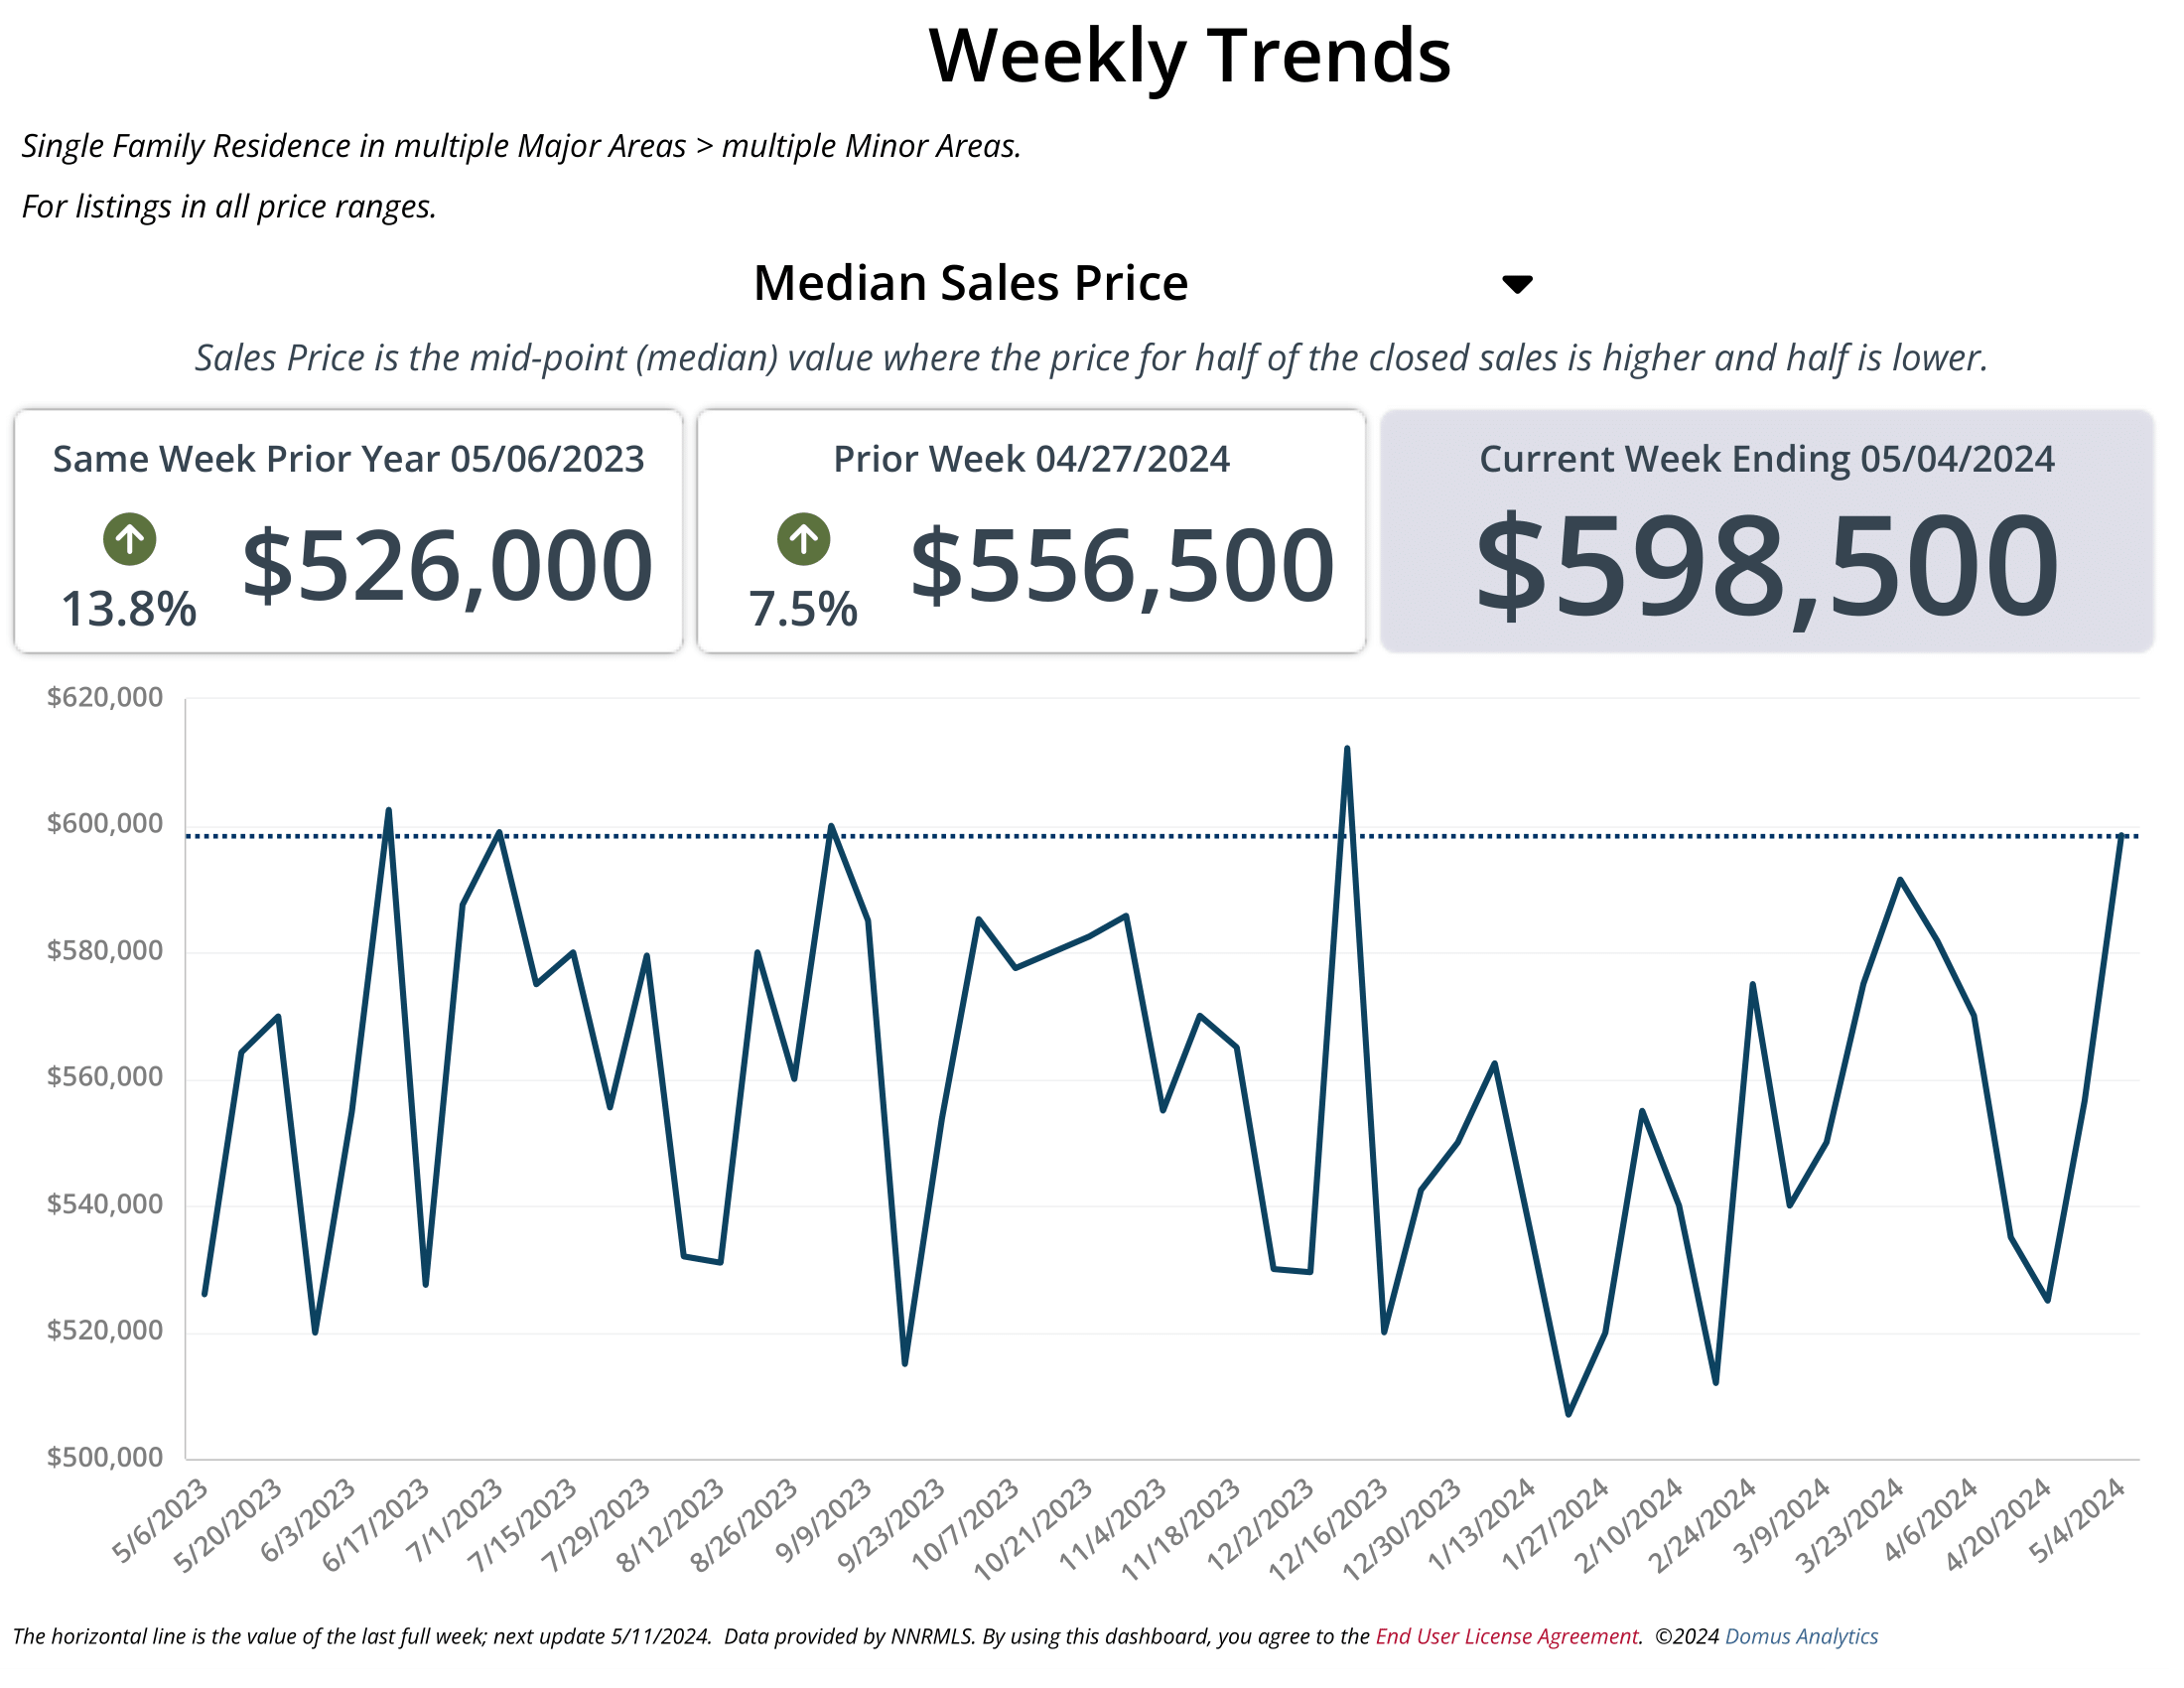 April 2024 median sales price